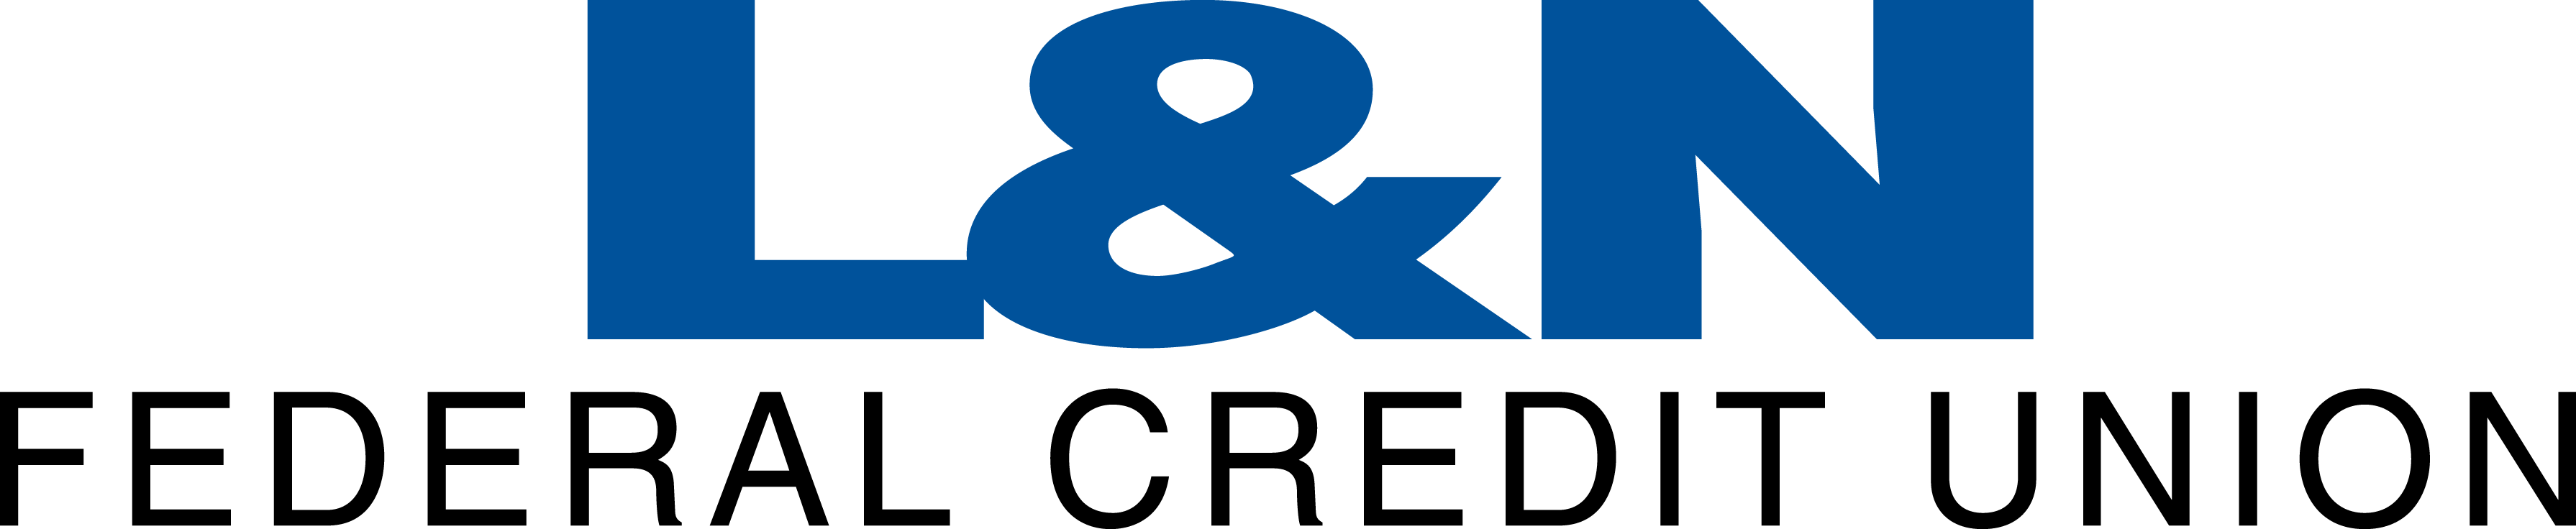 L&n Federal Credit Union - L&n Federal Credit Union (3581x736)